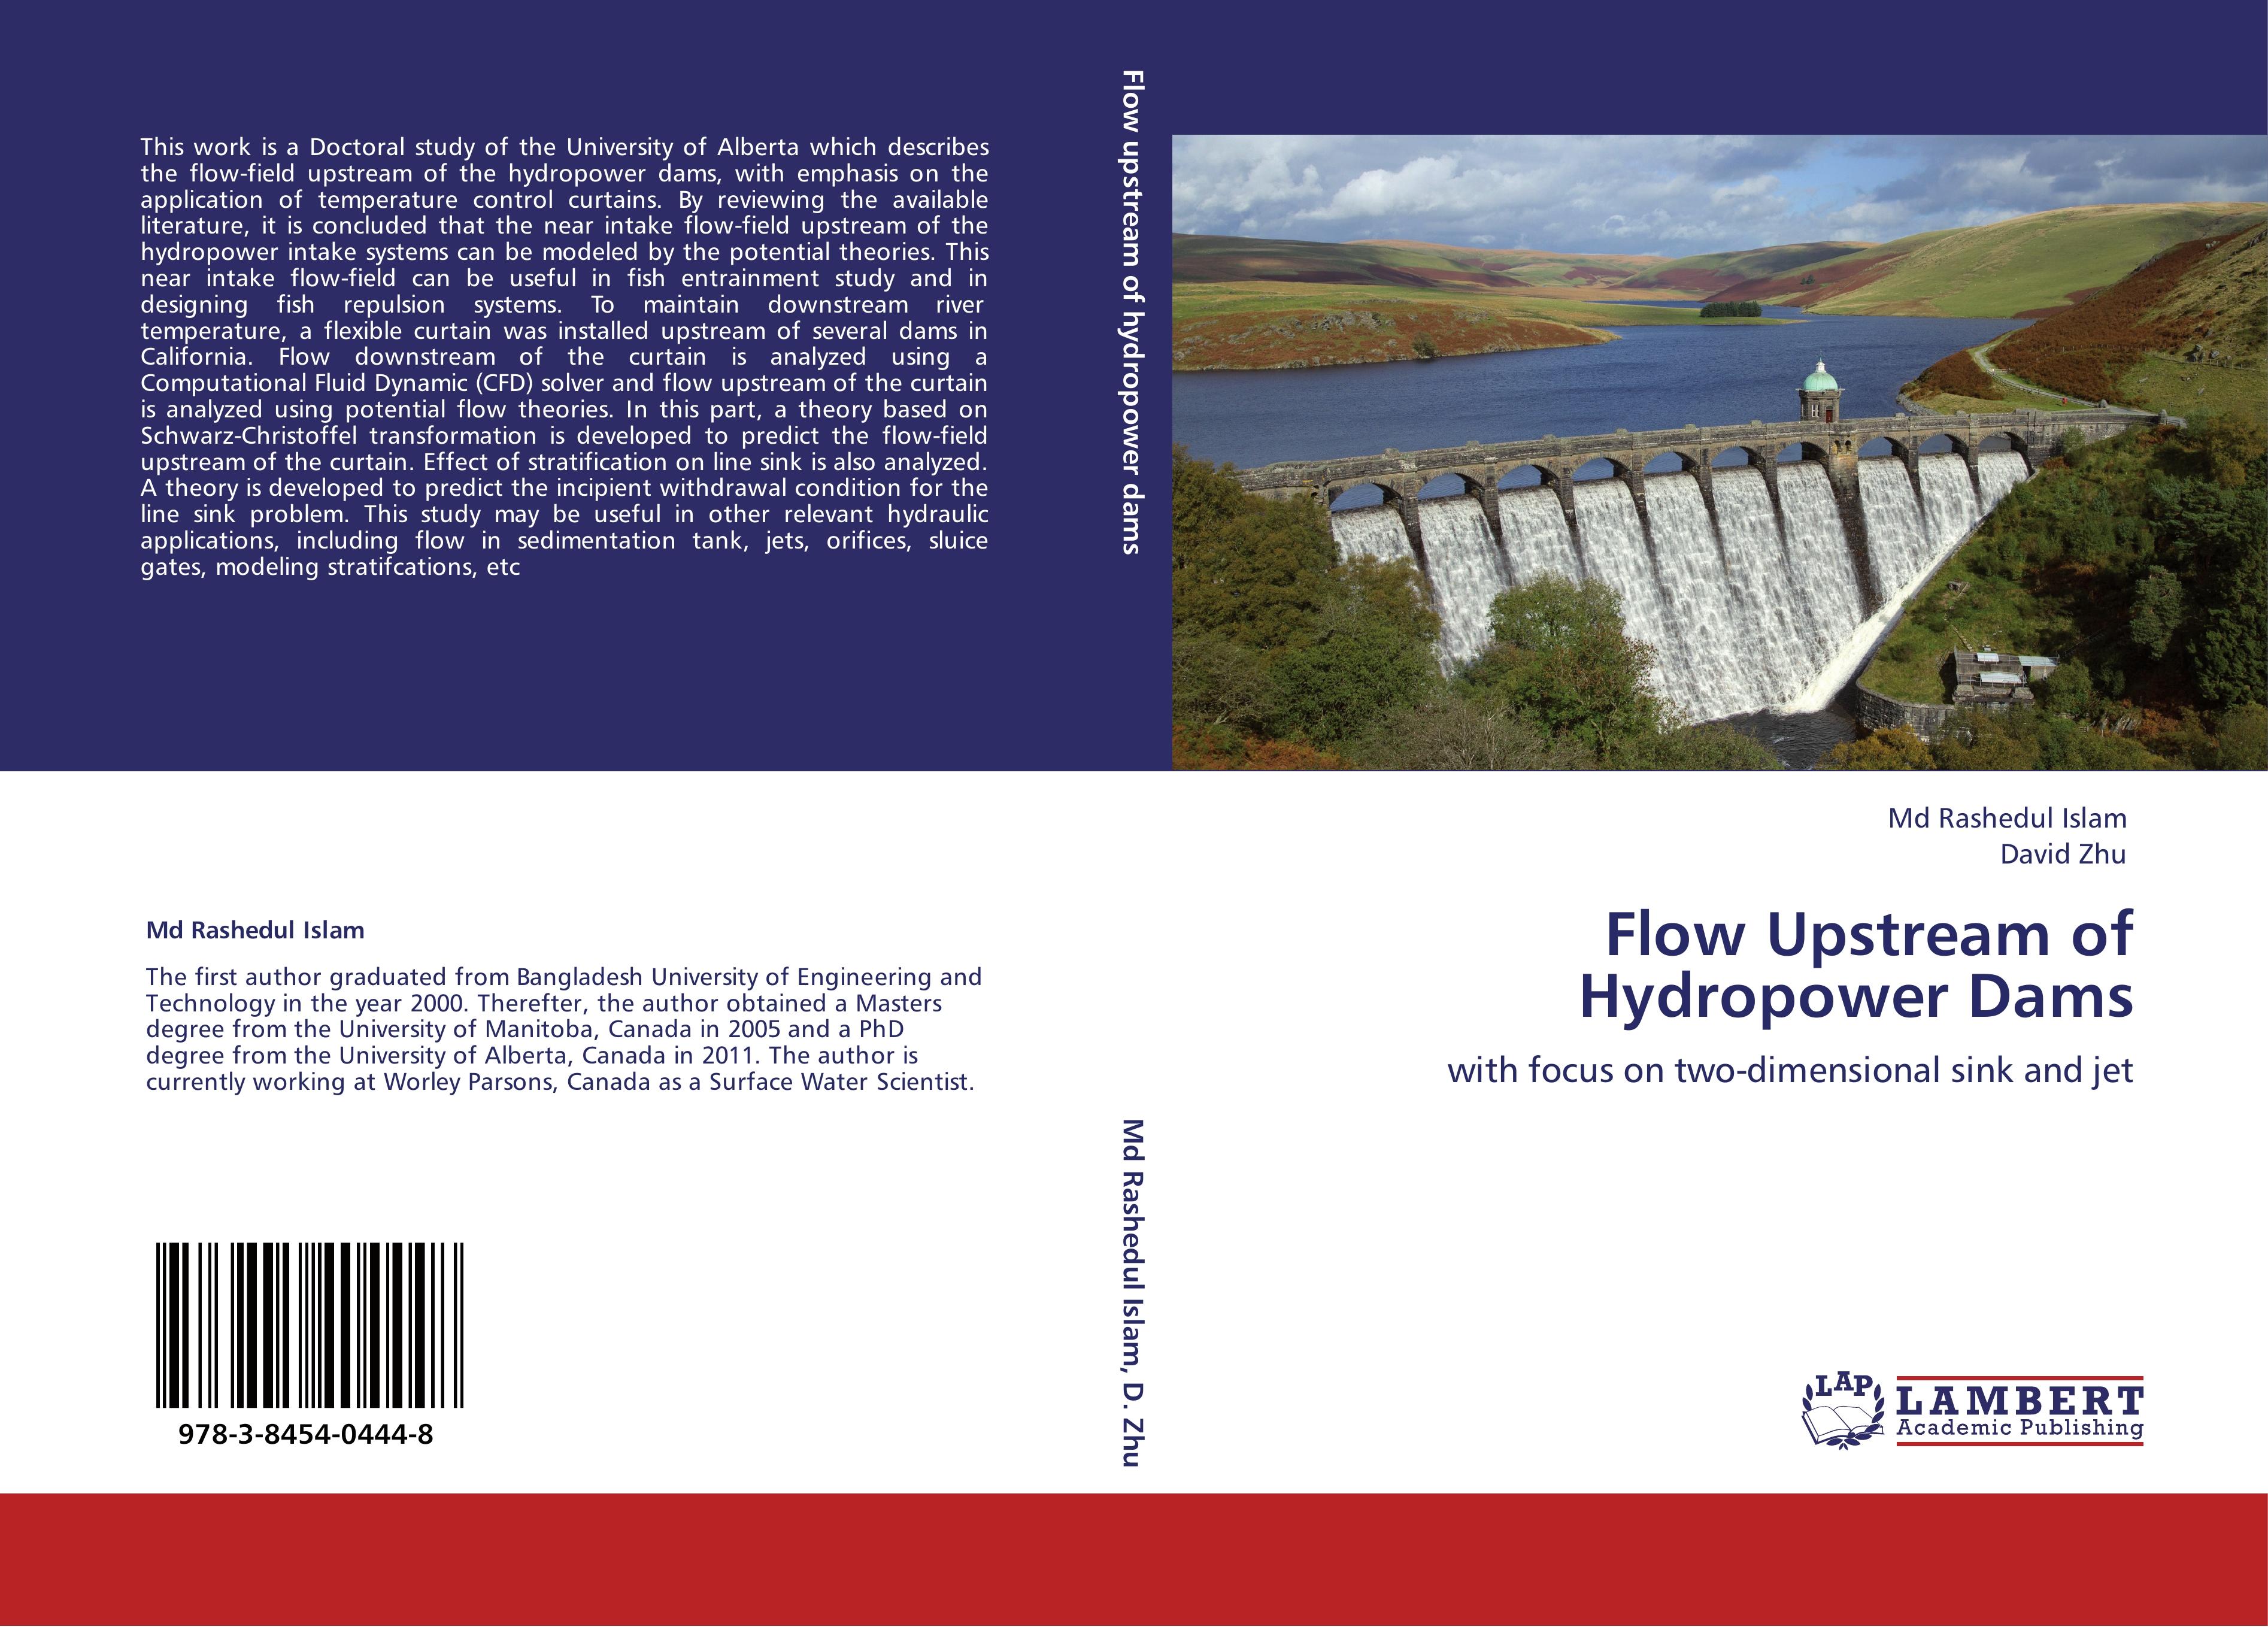 Flow Upstream of Hydropower Dams - Md Rashedul Islam David Zhu